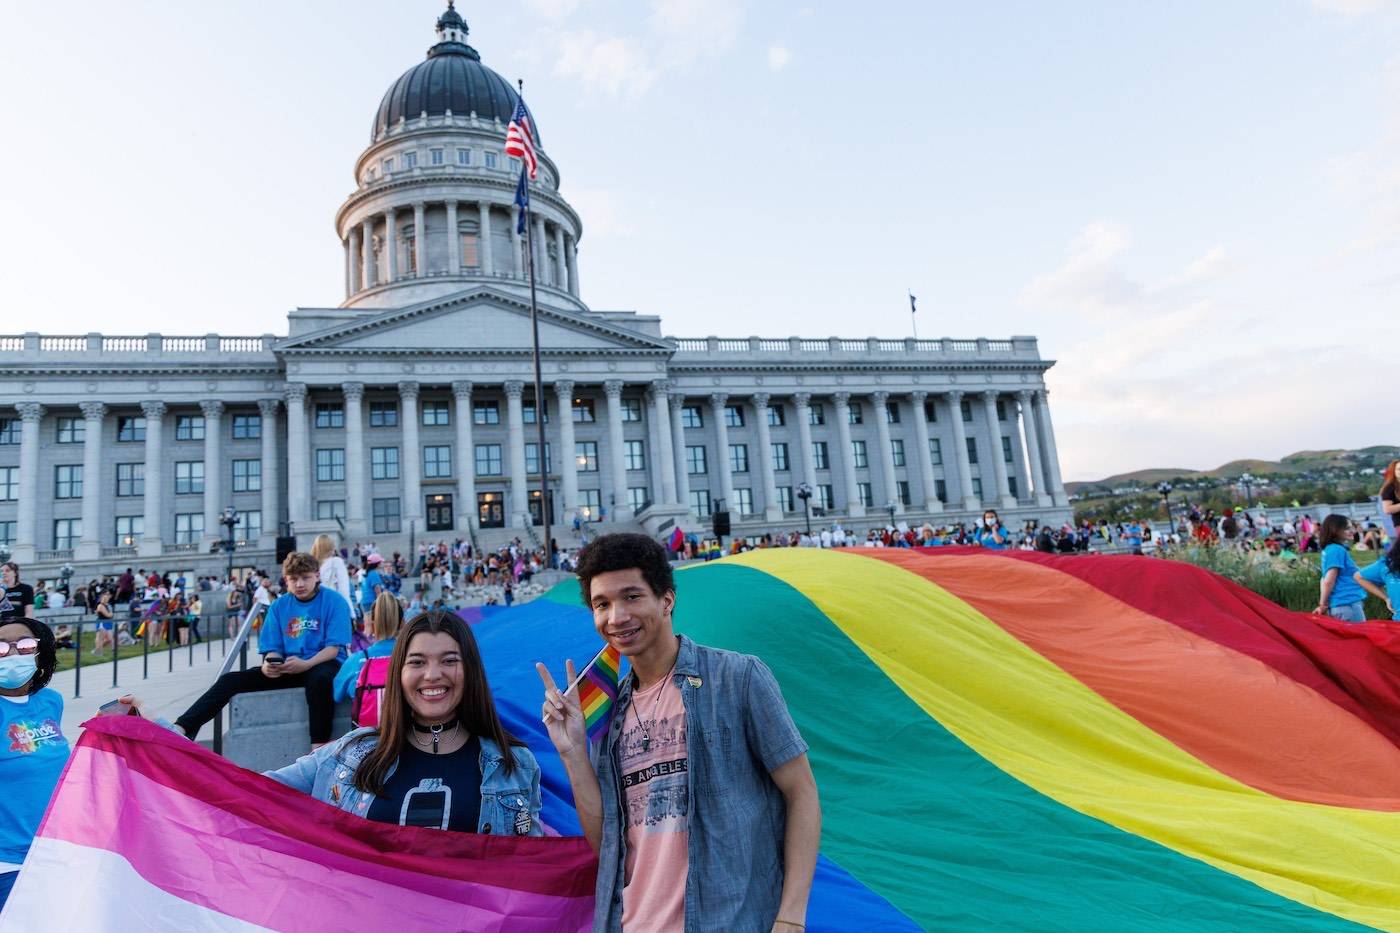 People celebrating pride at the Utah state capitol